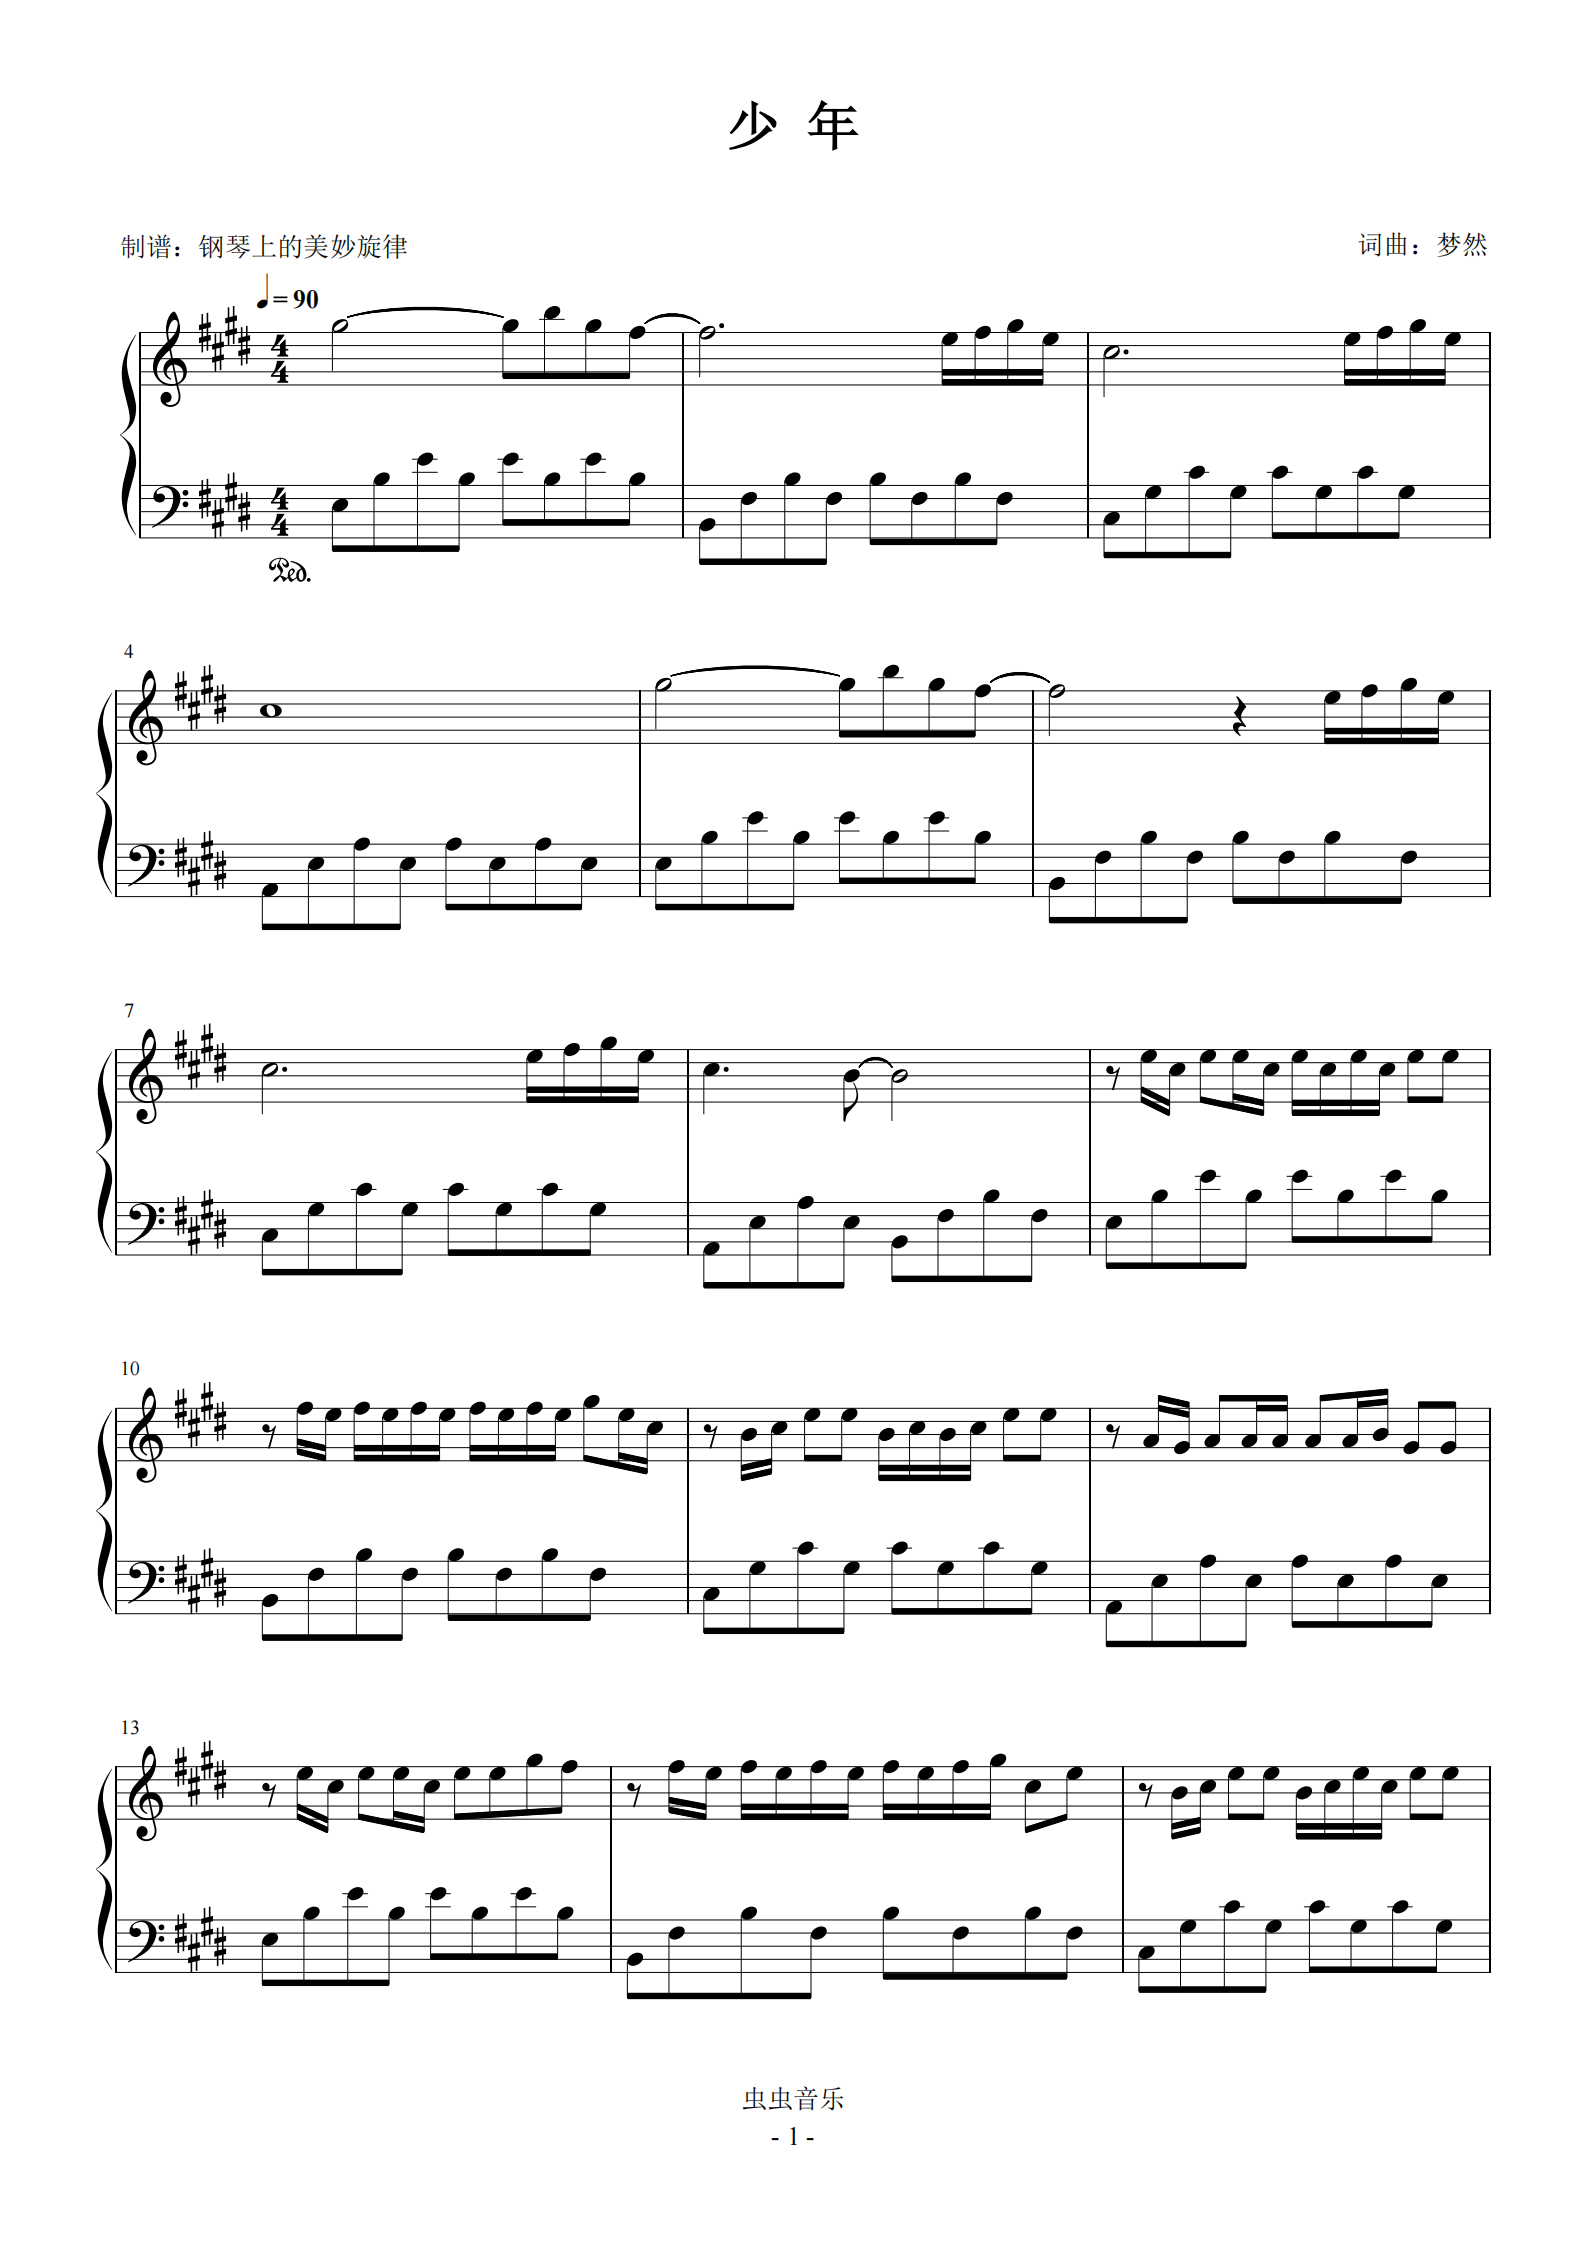 卡农初学版钢琴简谱_极品钢琴电脑版怎么玩_破解版钢琴块2